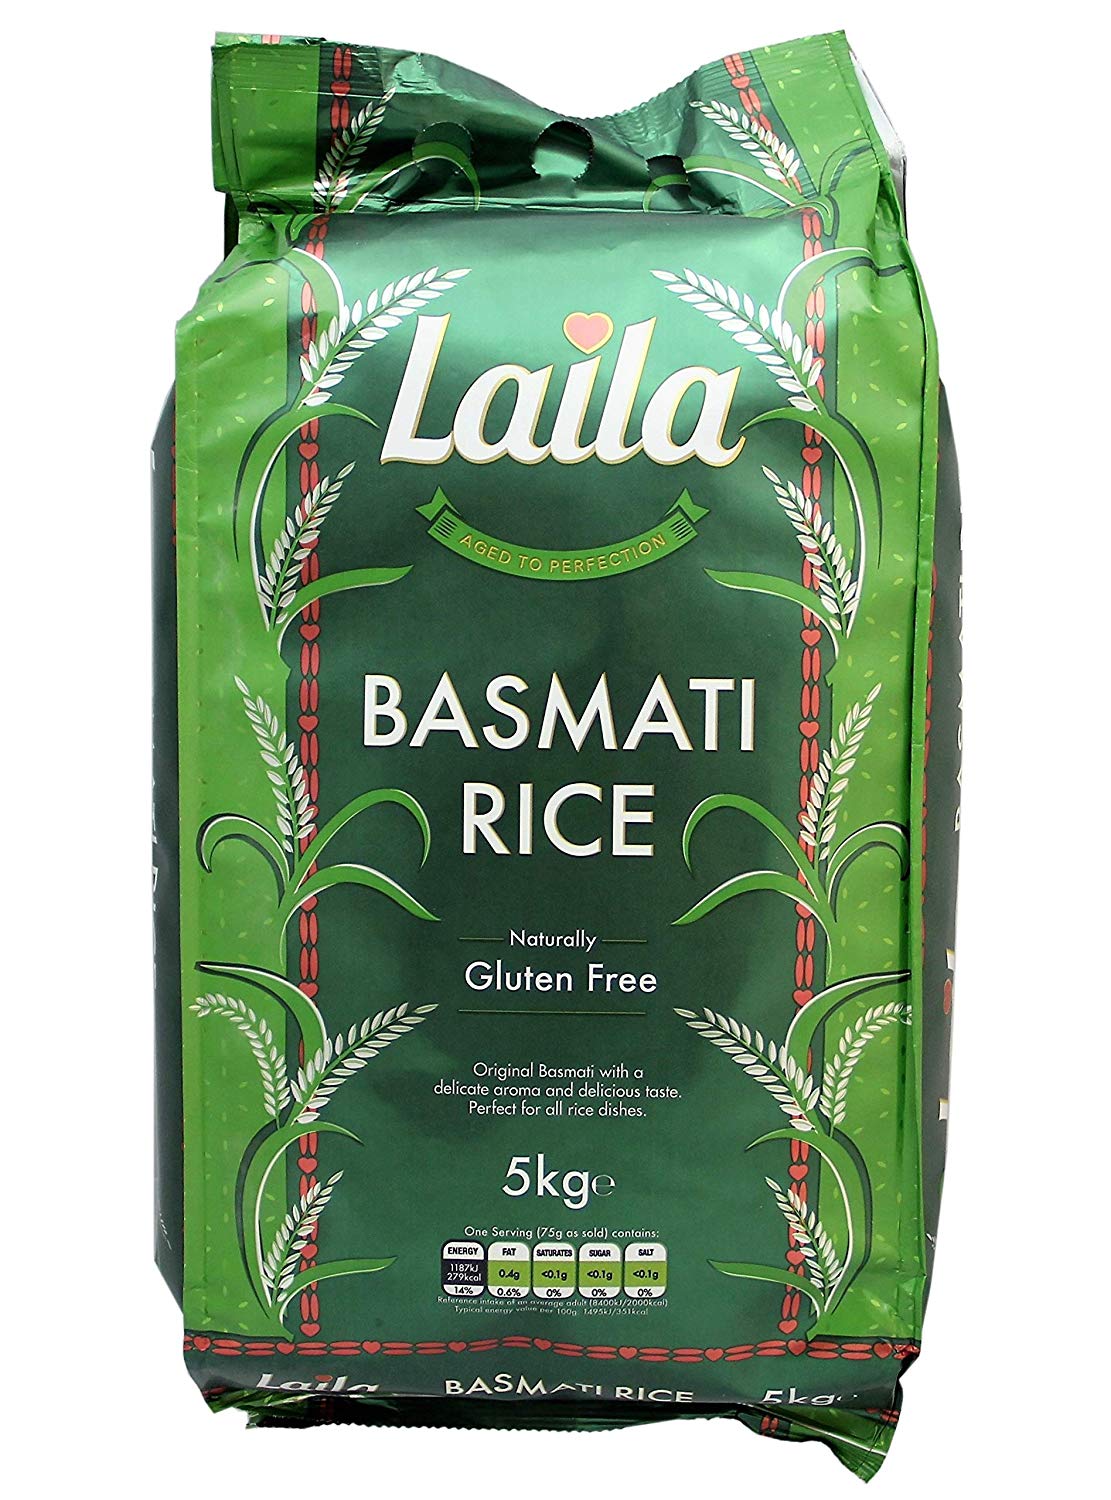 Laila Basmati Rice 20kg